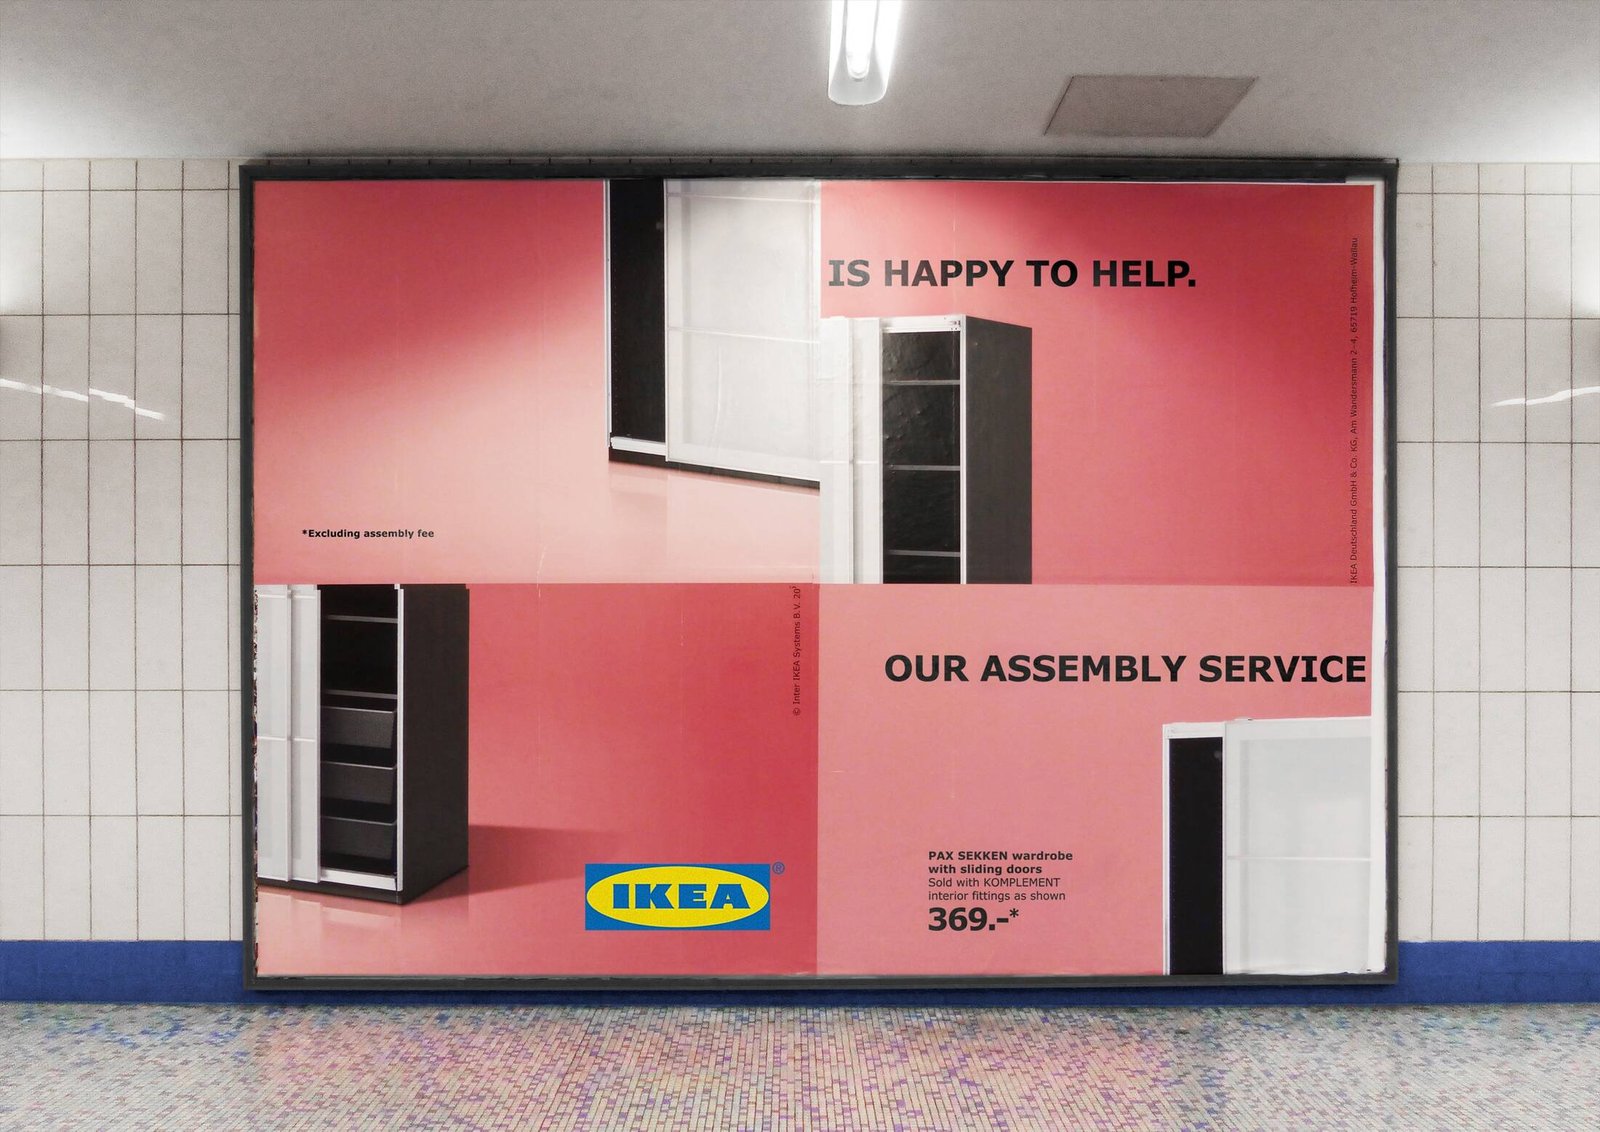 Ikea anuncio 02